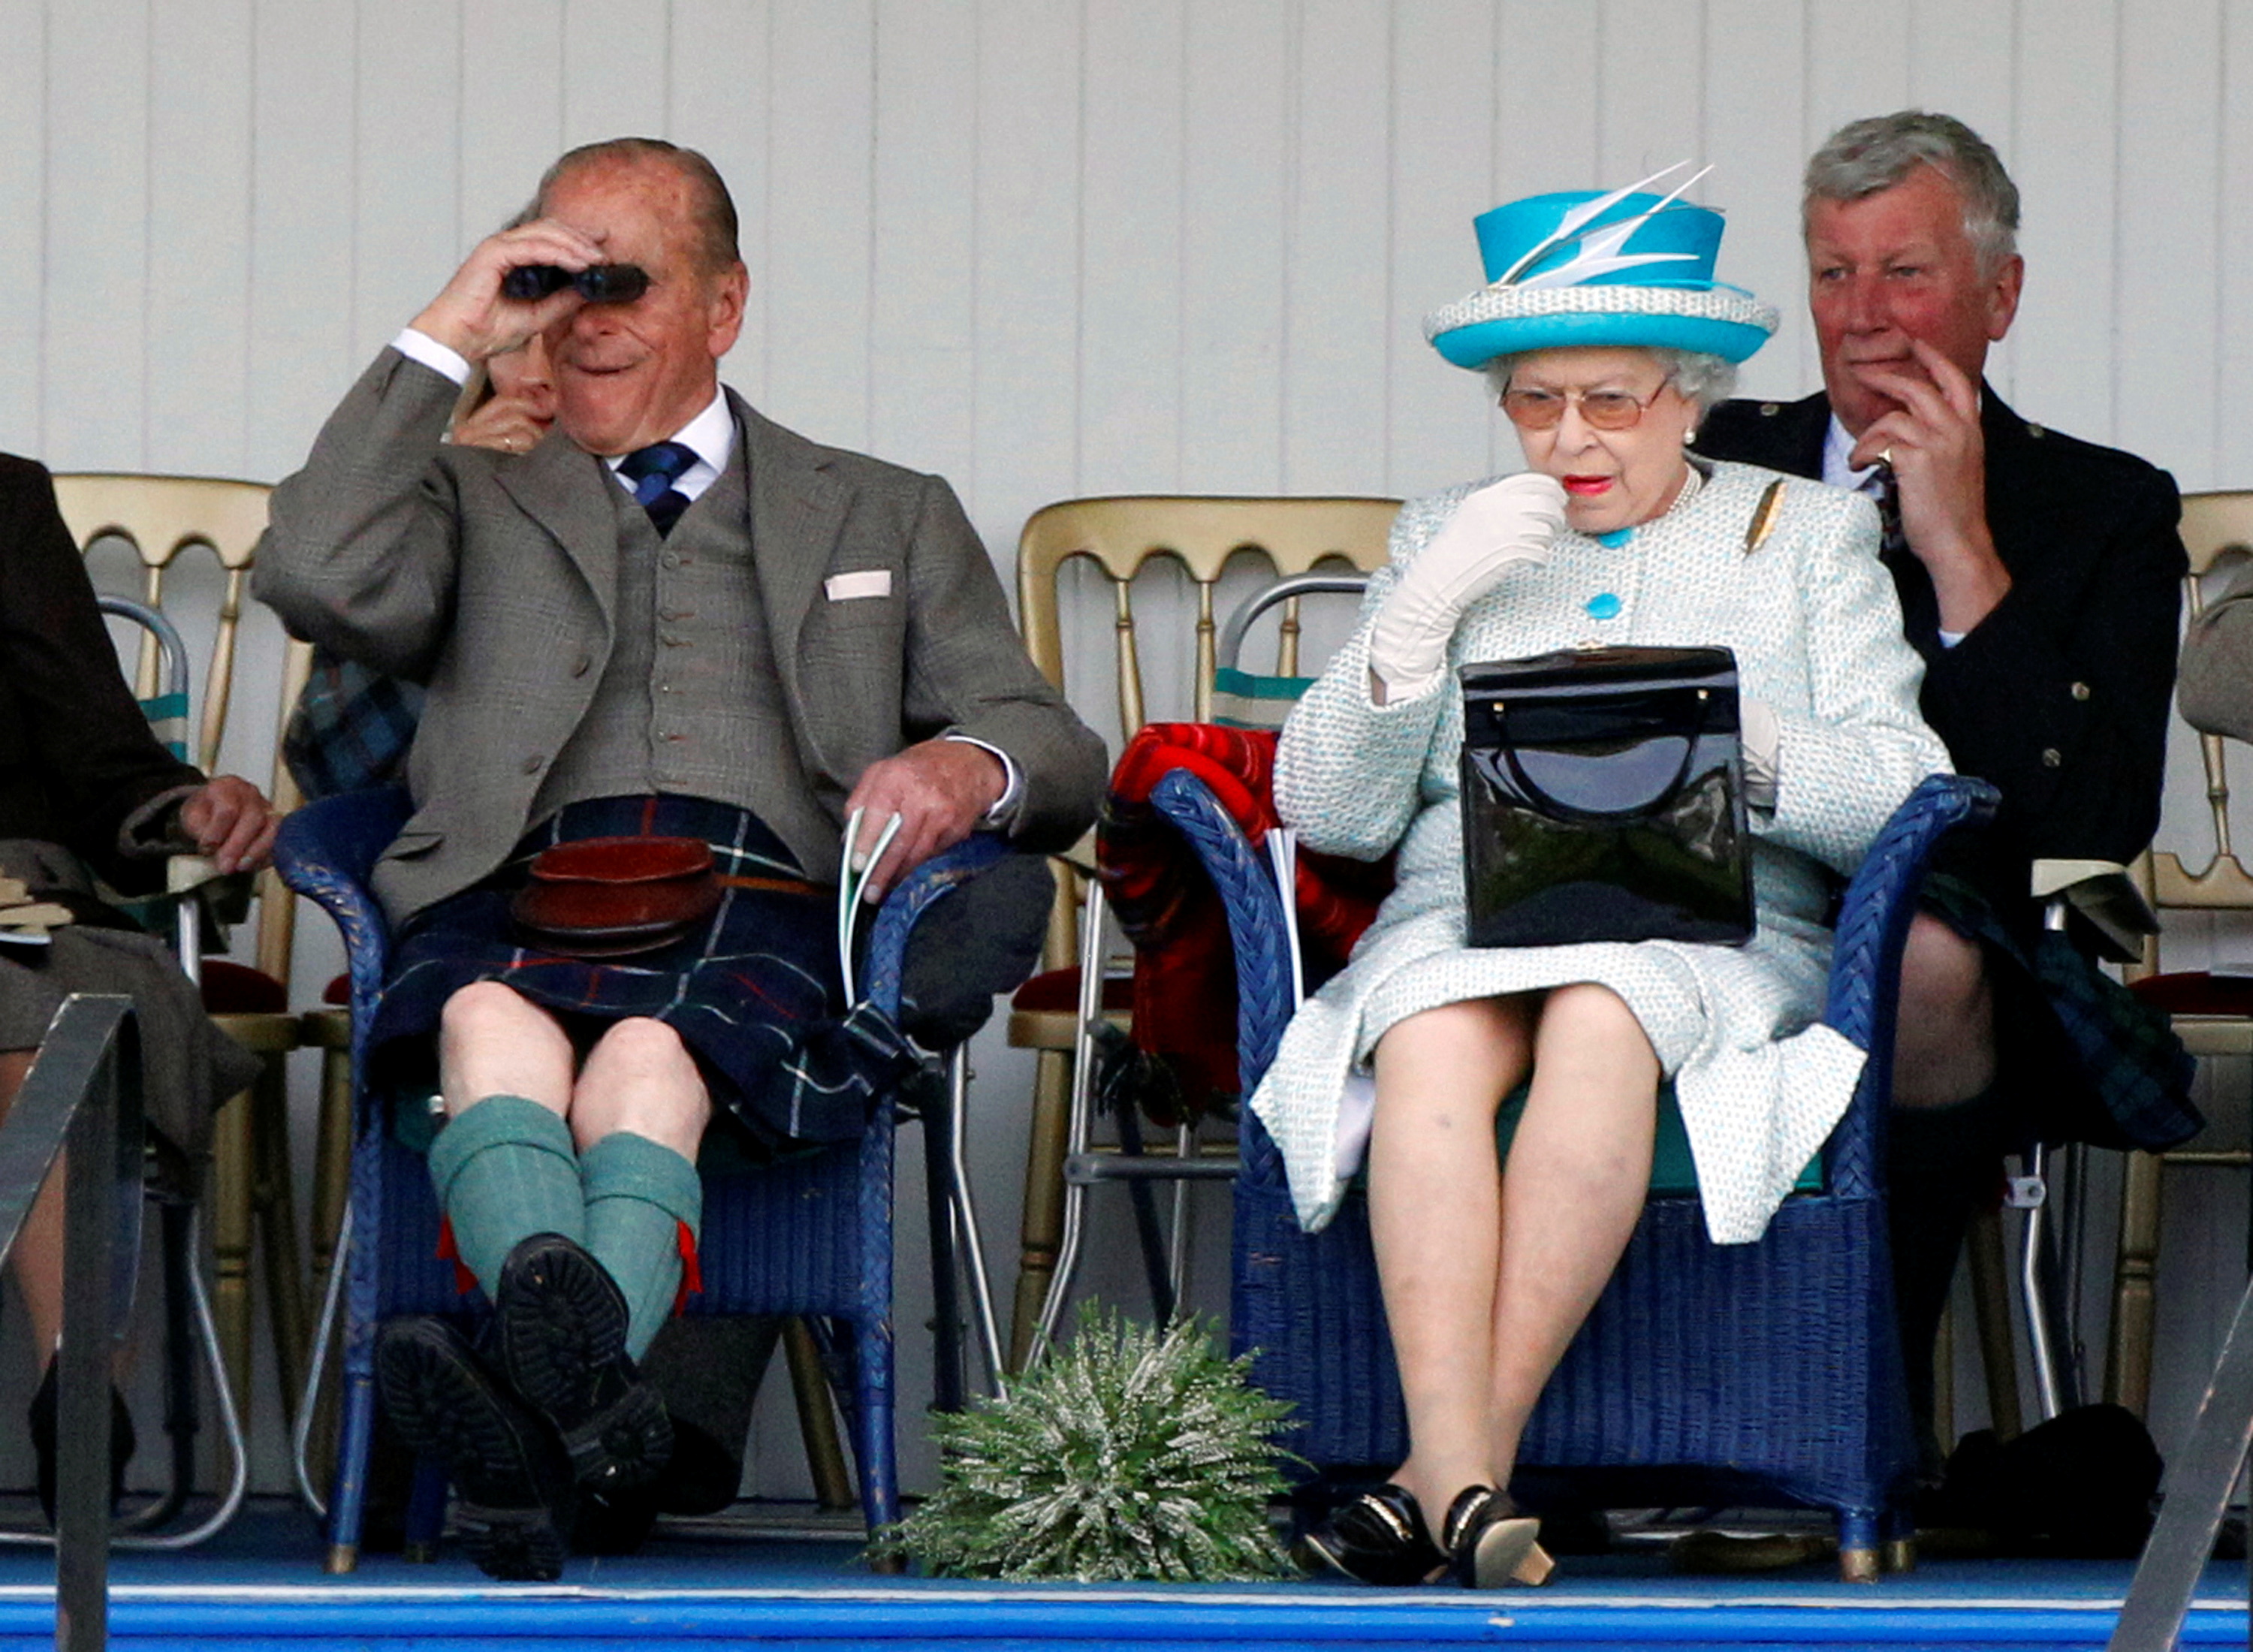 La reina Isabel de Gran Bretaña se aplica lápiz labial. A su lado está su esposo, el príncipe Felipe. La imagen fue tomada durante un evento en Escocia el 3 de septiembre de 2011